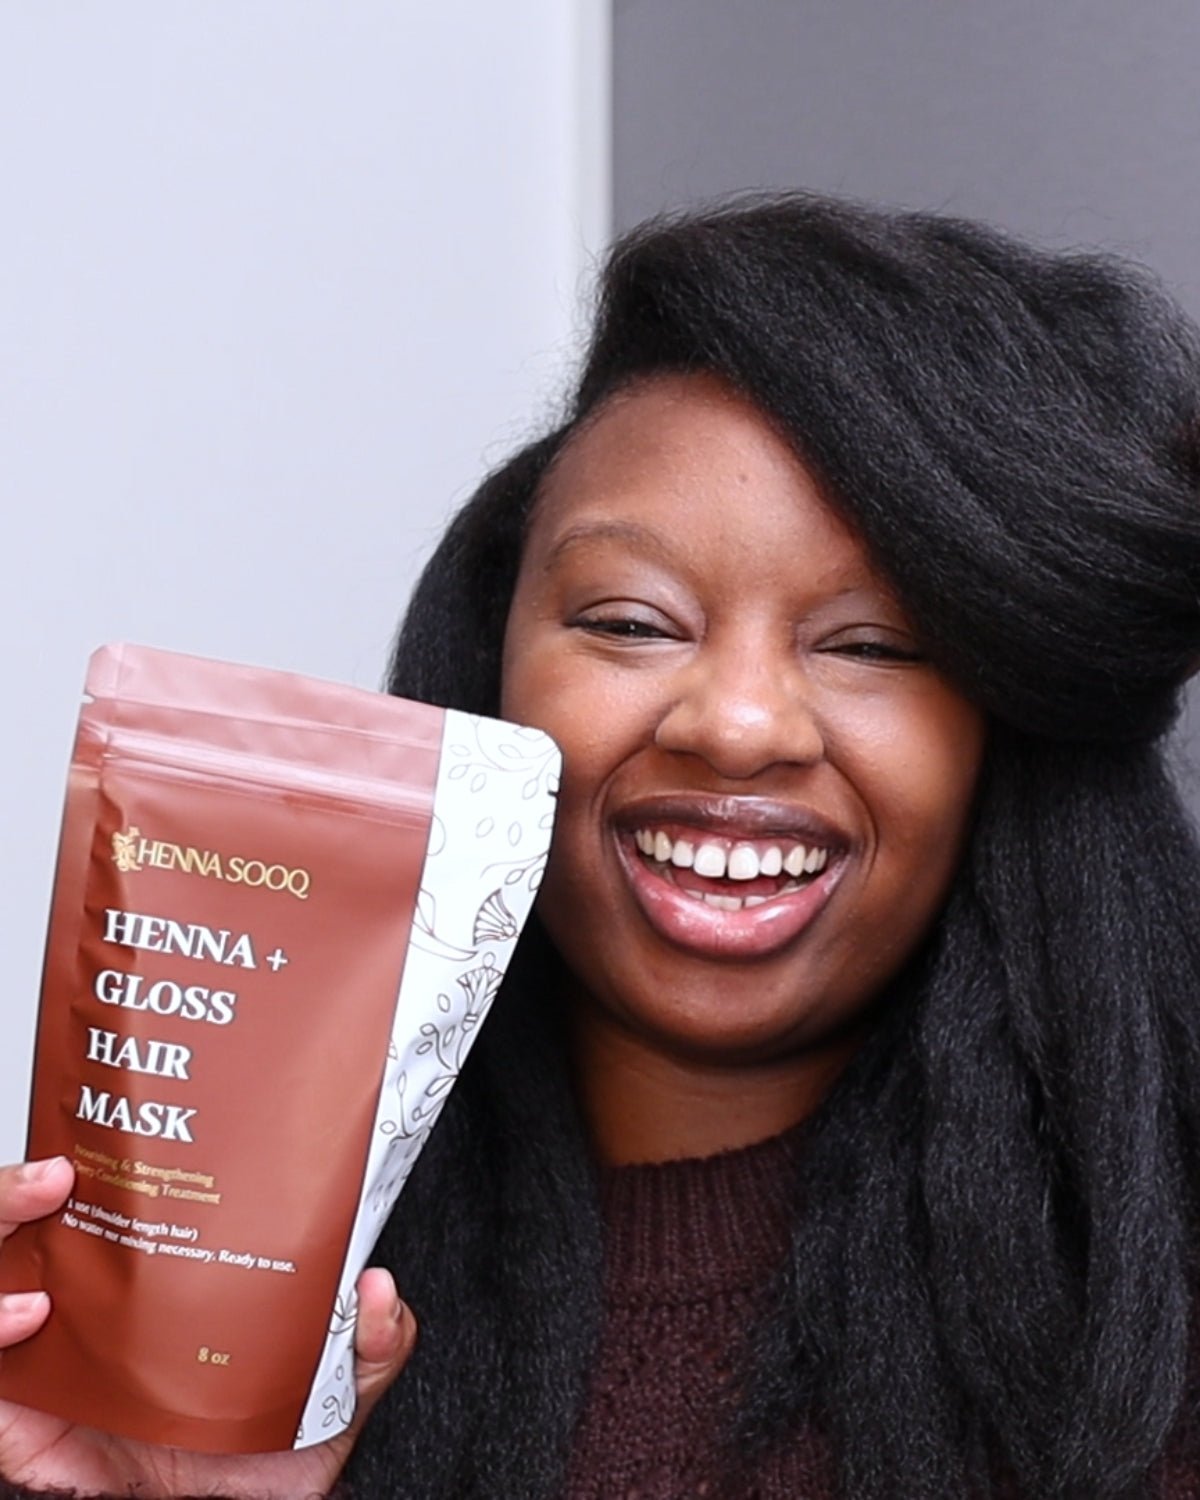 Henna + Gloss Hair Mask - Henna Sooq